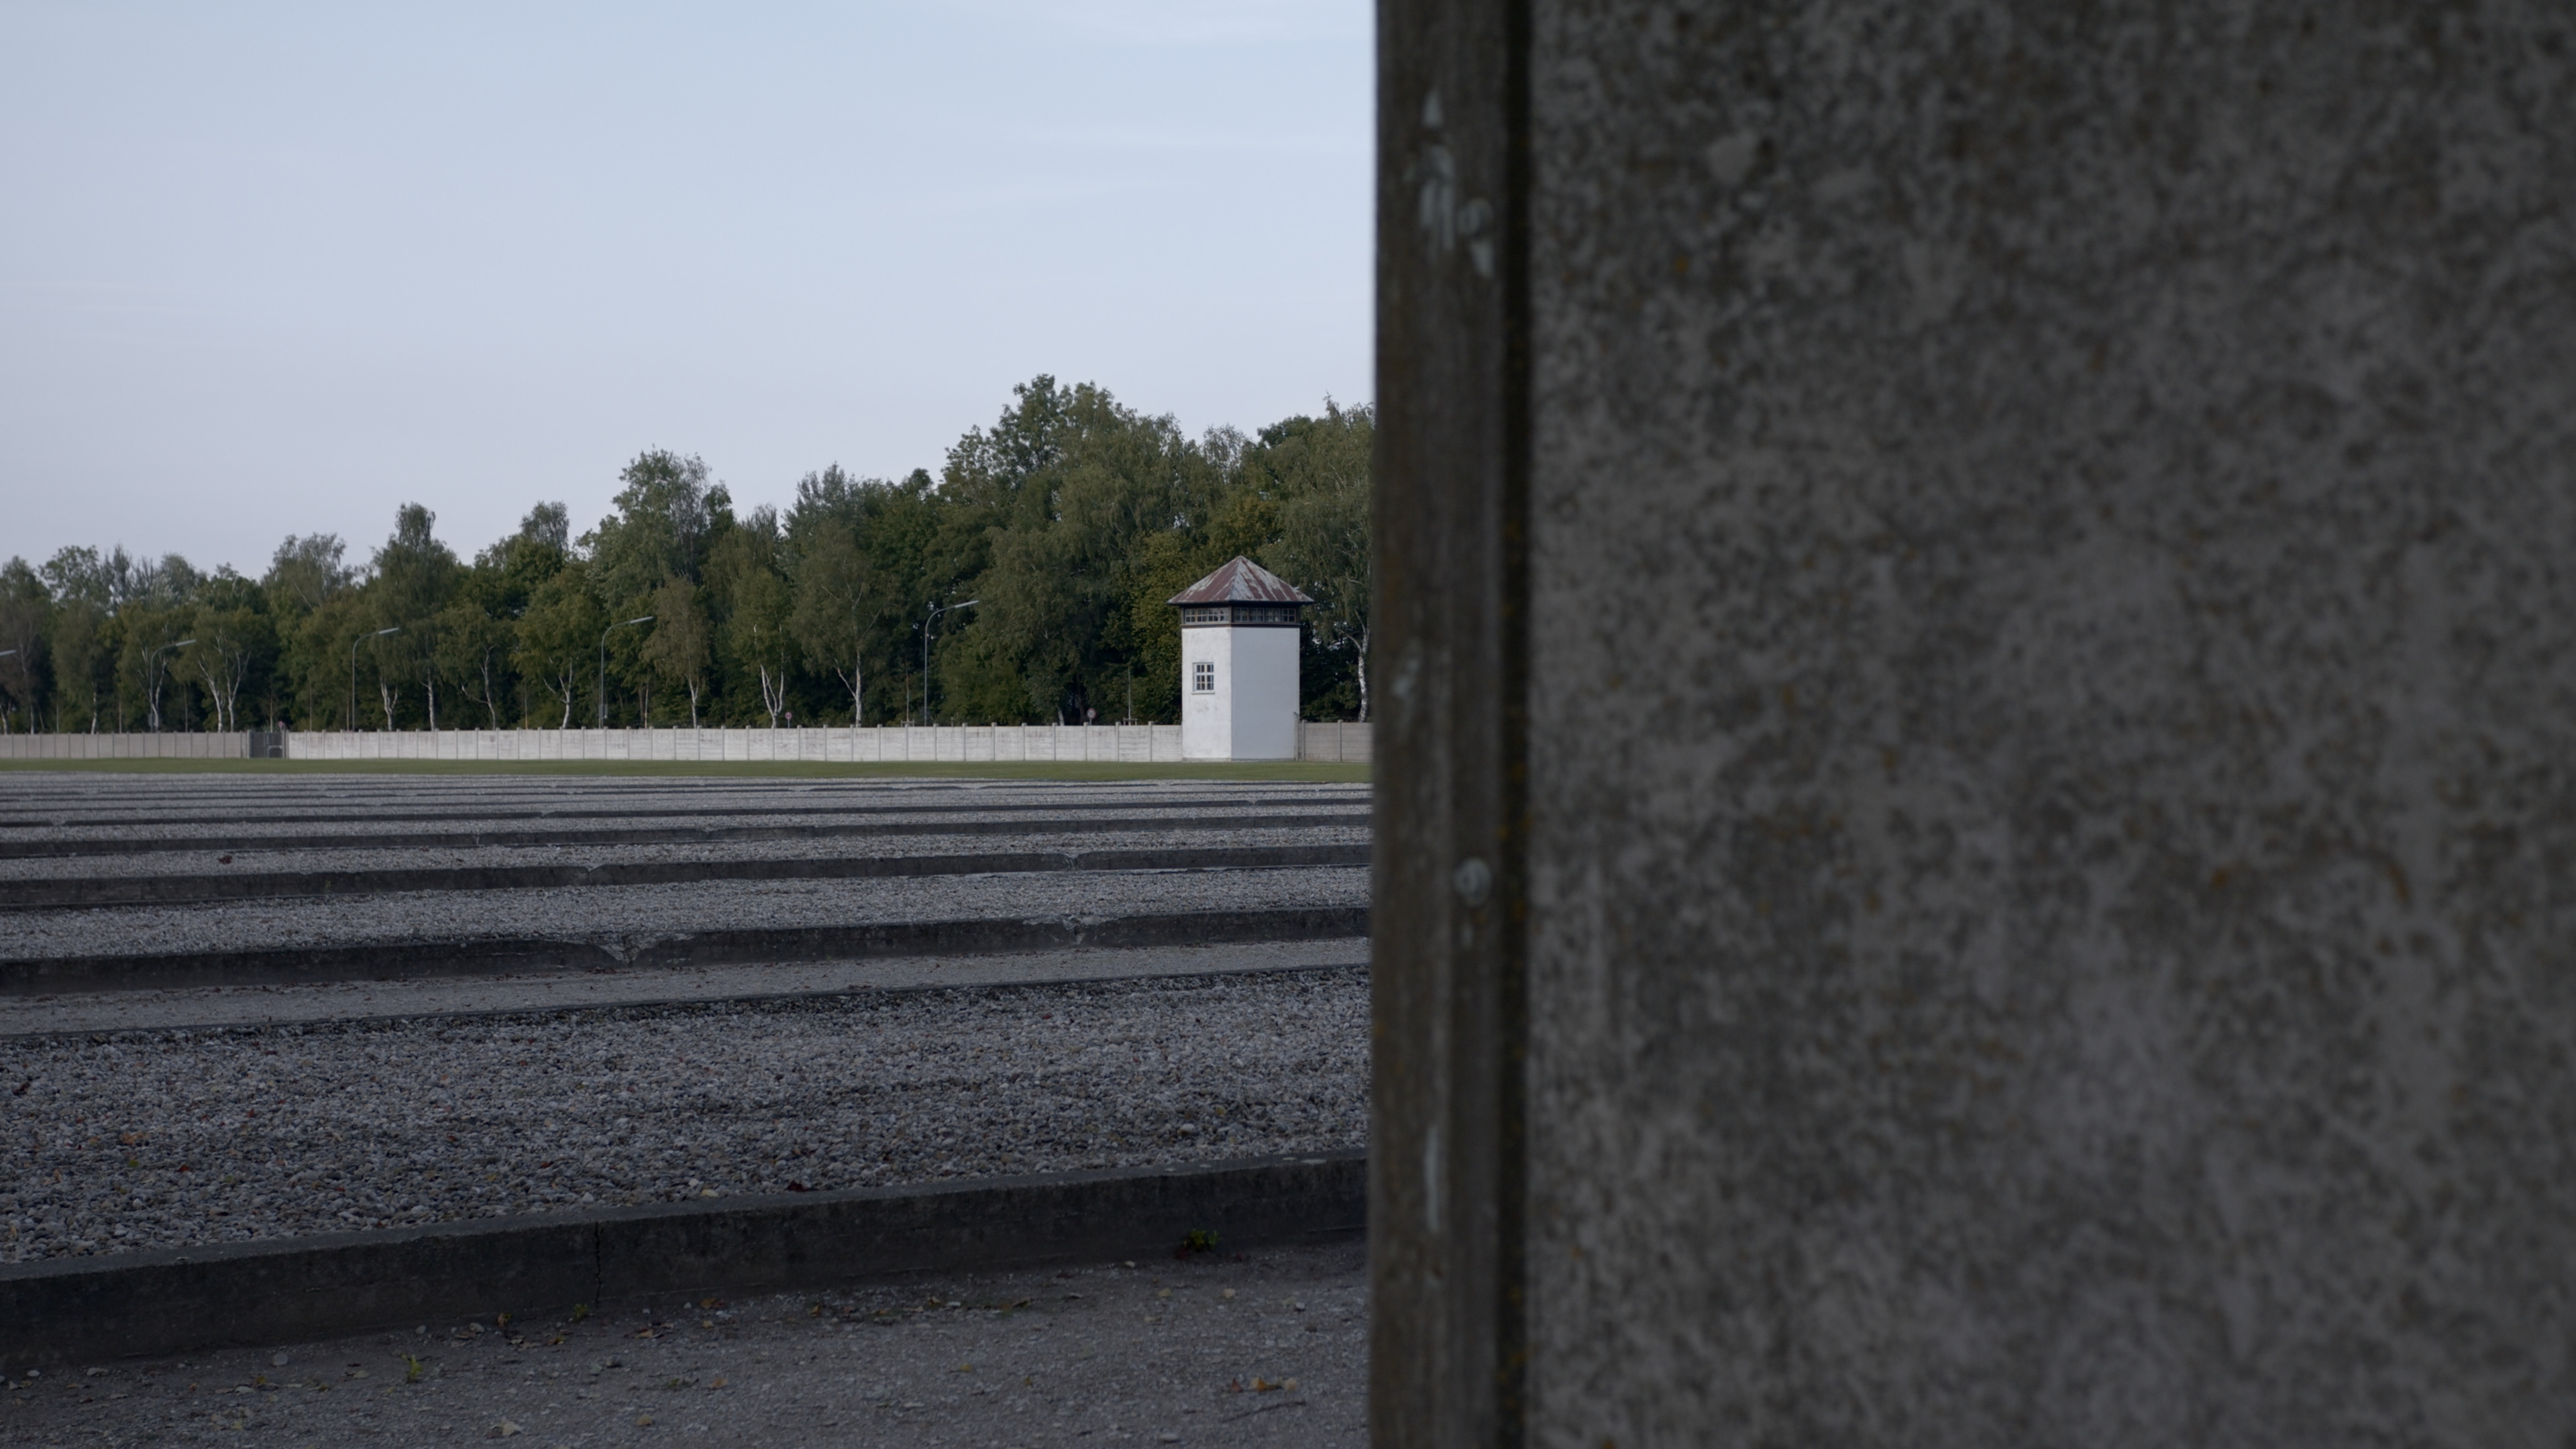   Neuer Film über das Konzentrationslager Dachau | Macherinnen stellen den Film an der HGB Mittwochabend online vor  